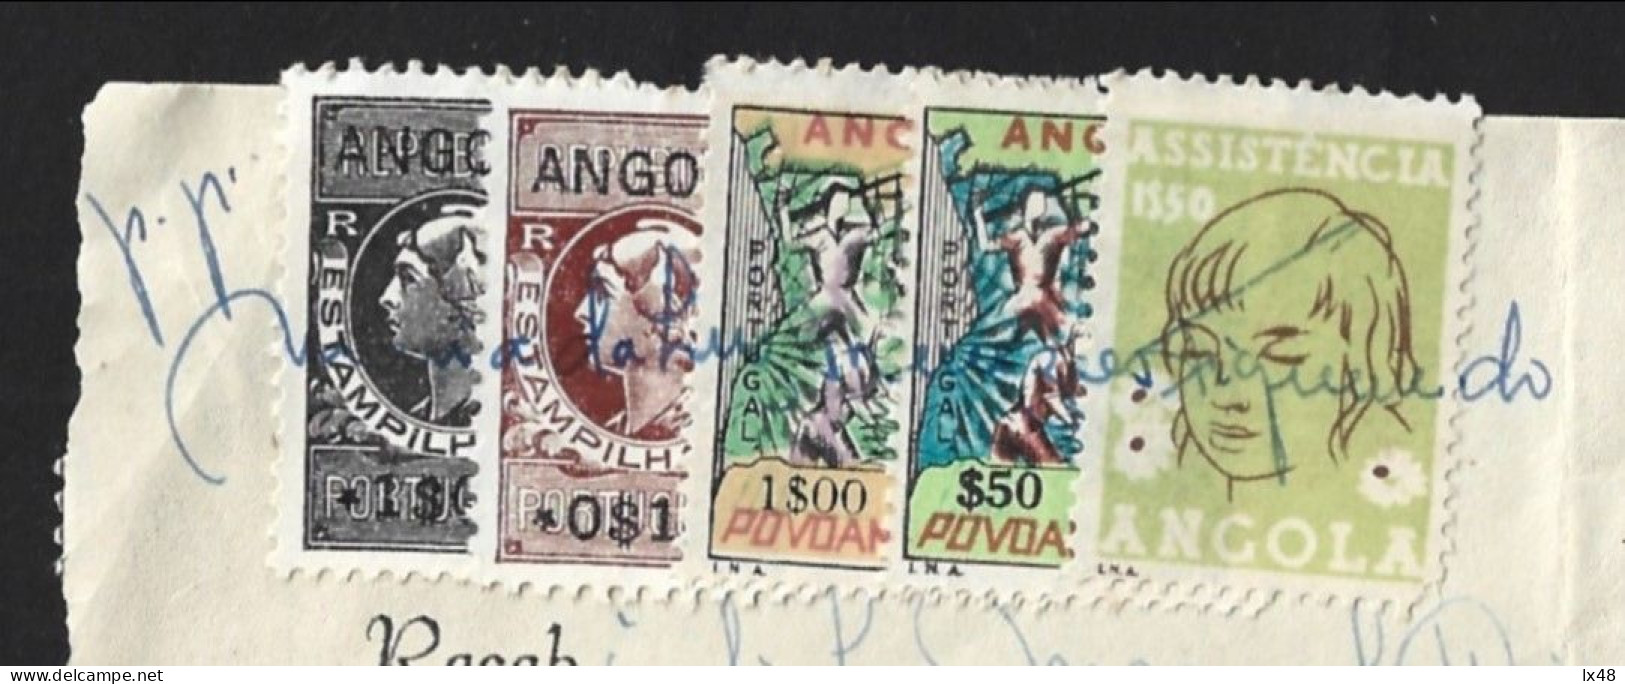 Recibo De Angola 1971 Com Stamps Assistência E Povoamento Utilizados Como Estampilha Fiscal. Angola Receipt From 1971 Wi - Storia Postale